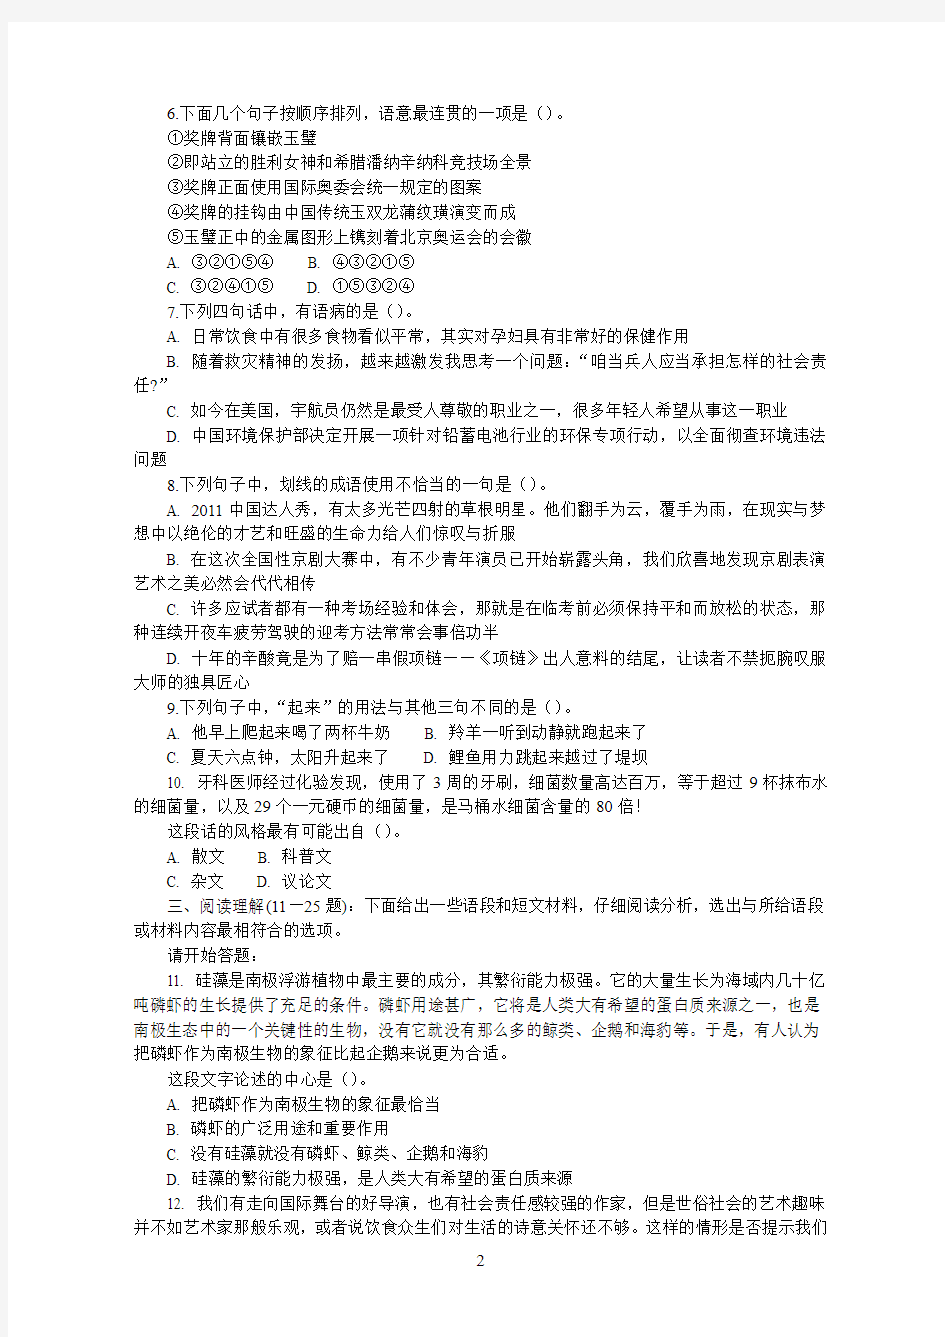 (已印)2012年上海行测A类真题及答案解析